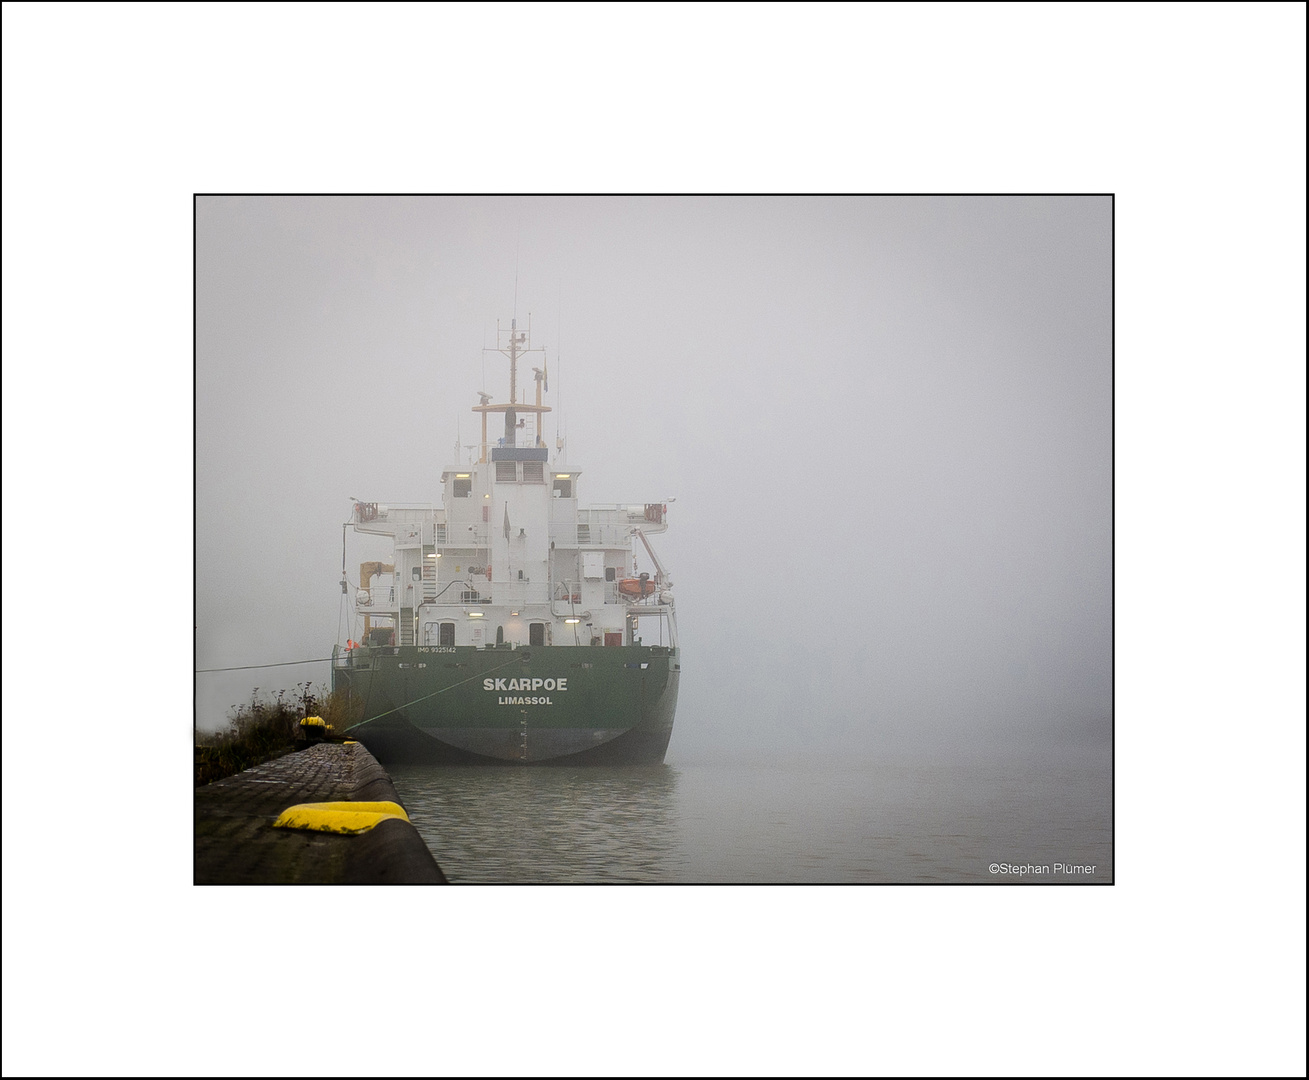 Hafen im Nebel